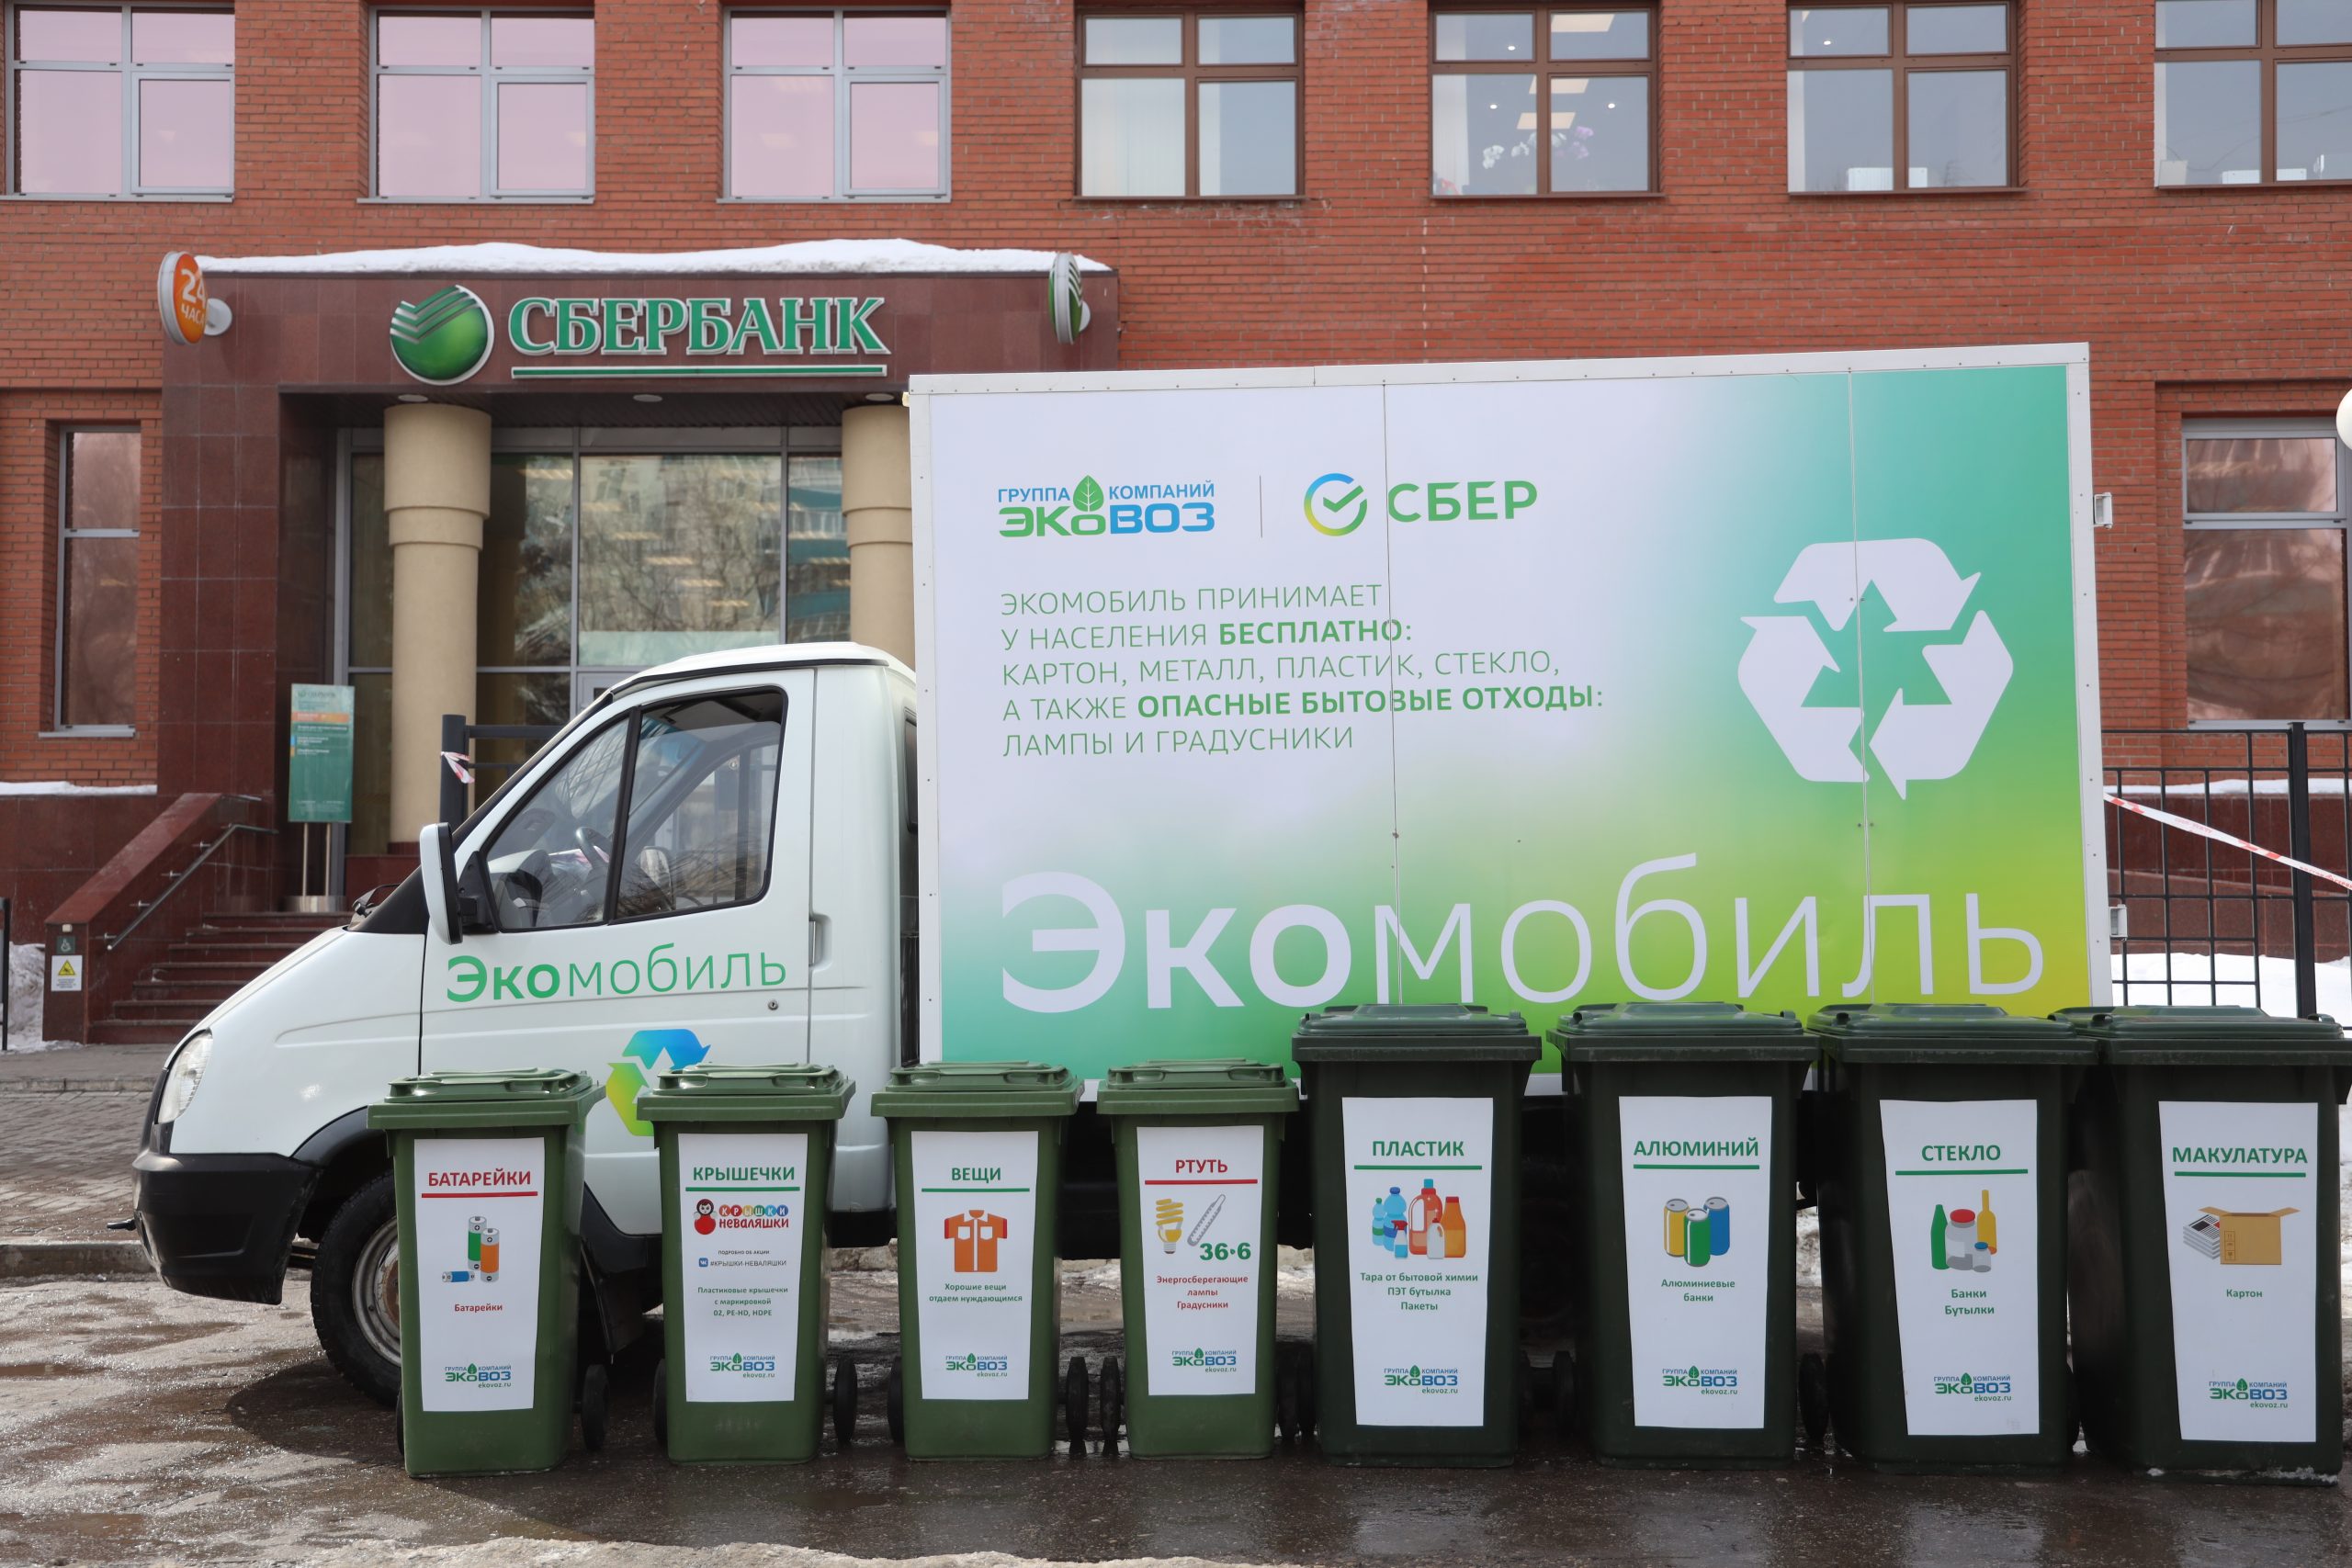 585 кг раздельно собранных отходов: Сбербанк и "ЭкоВоз" подвели первые итоги работы совместного проекта